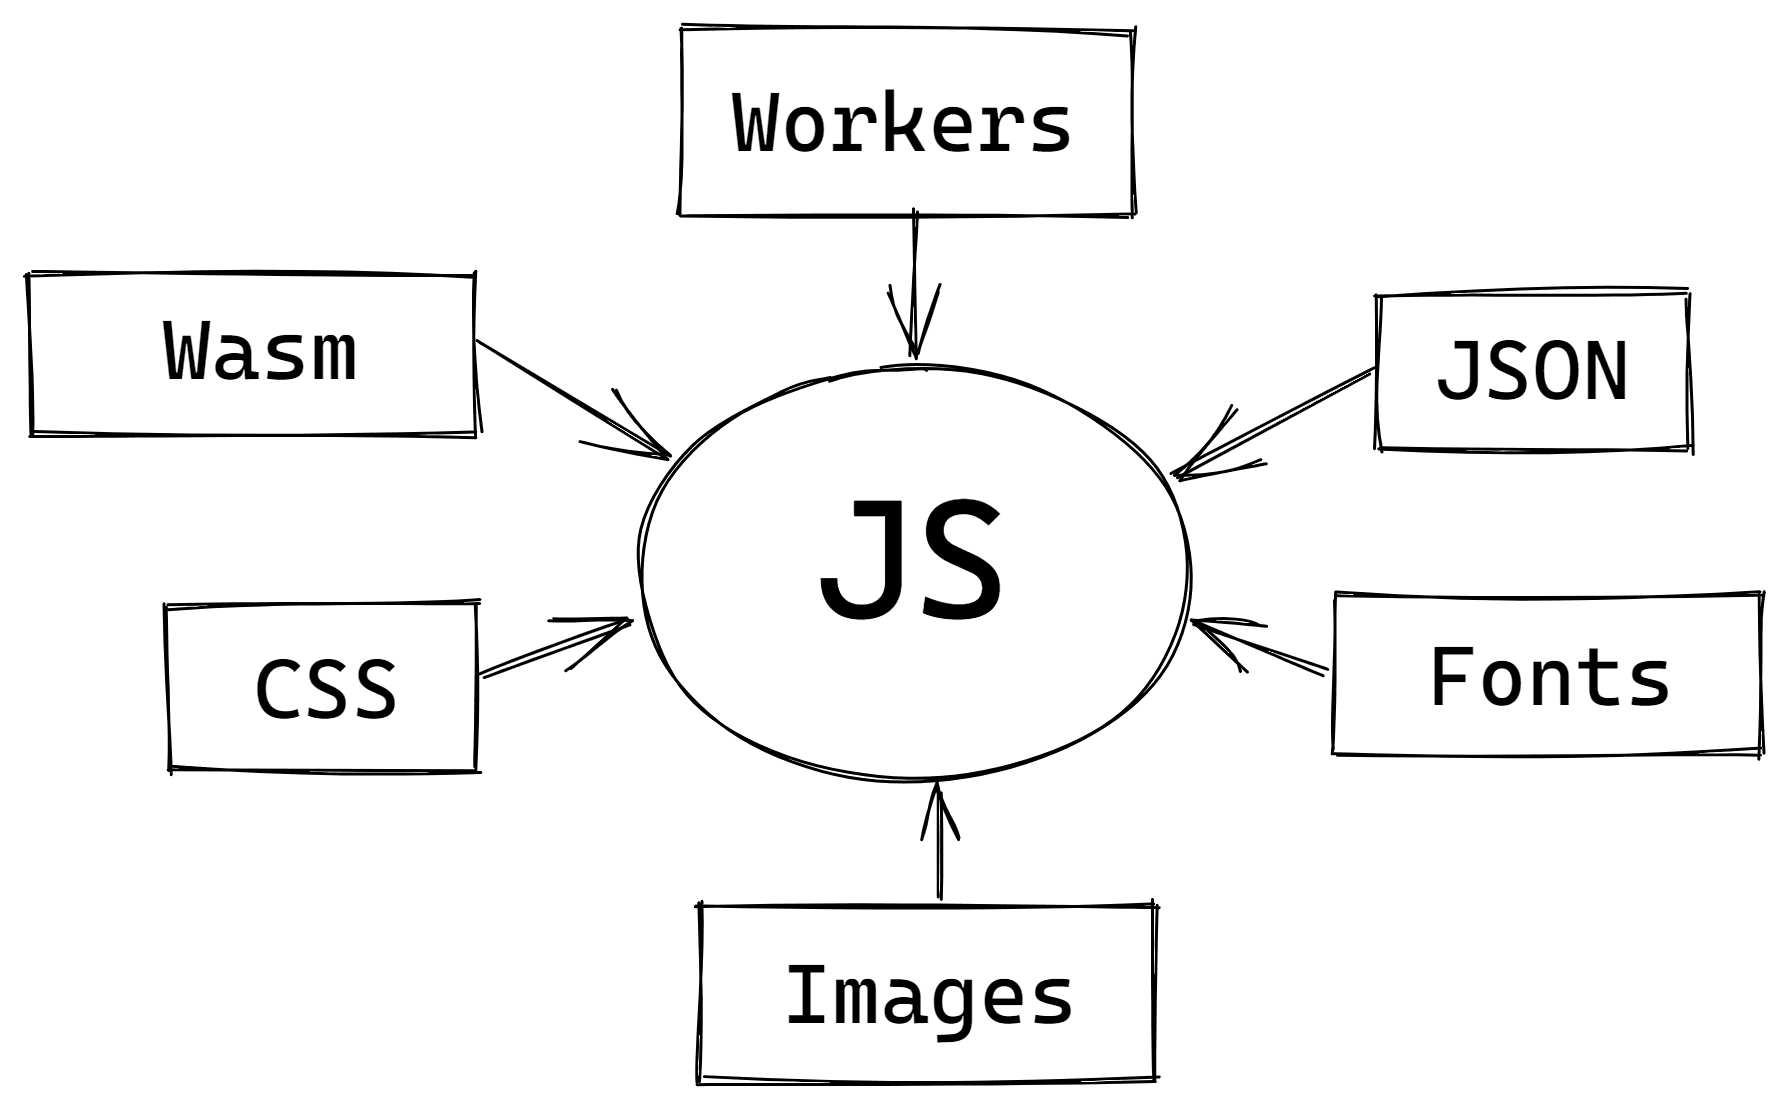 直观呈现导入到 JS 中的各类资源的图表。